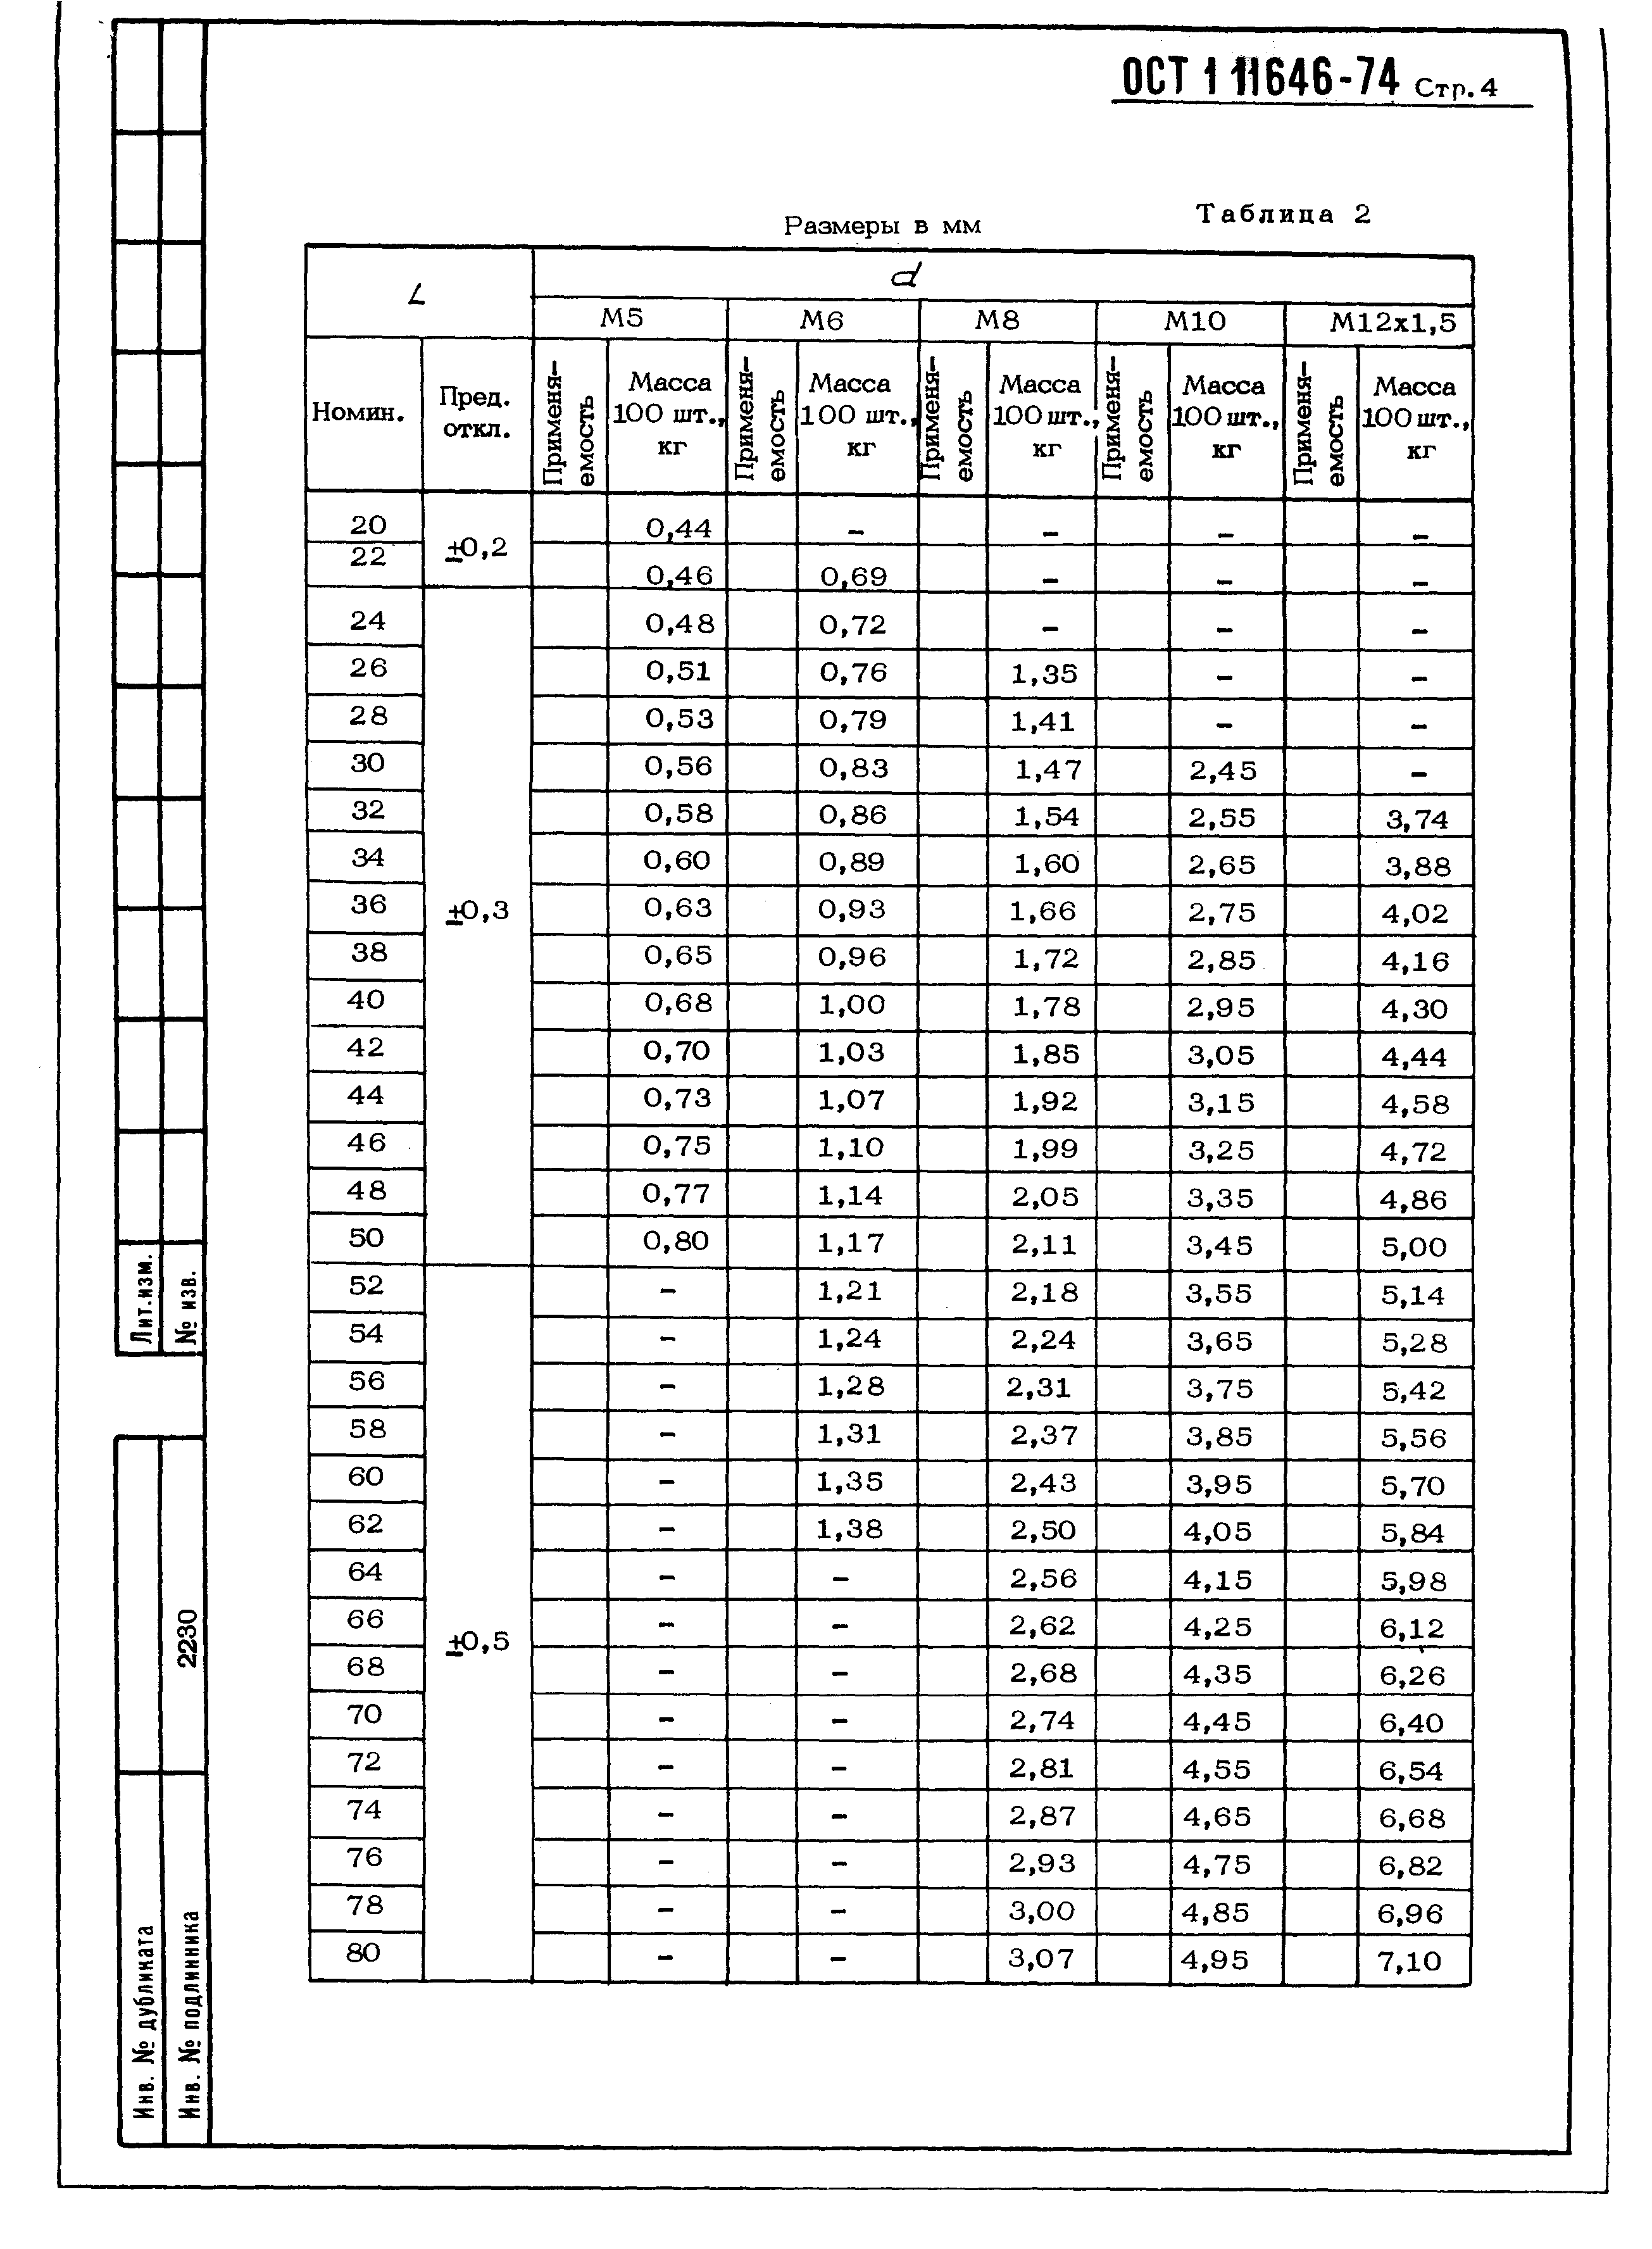 ОСТ 1 11646-74